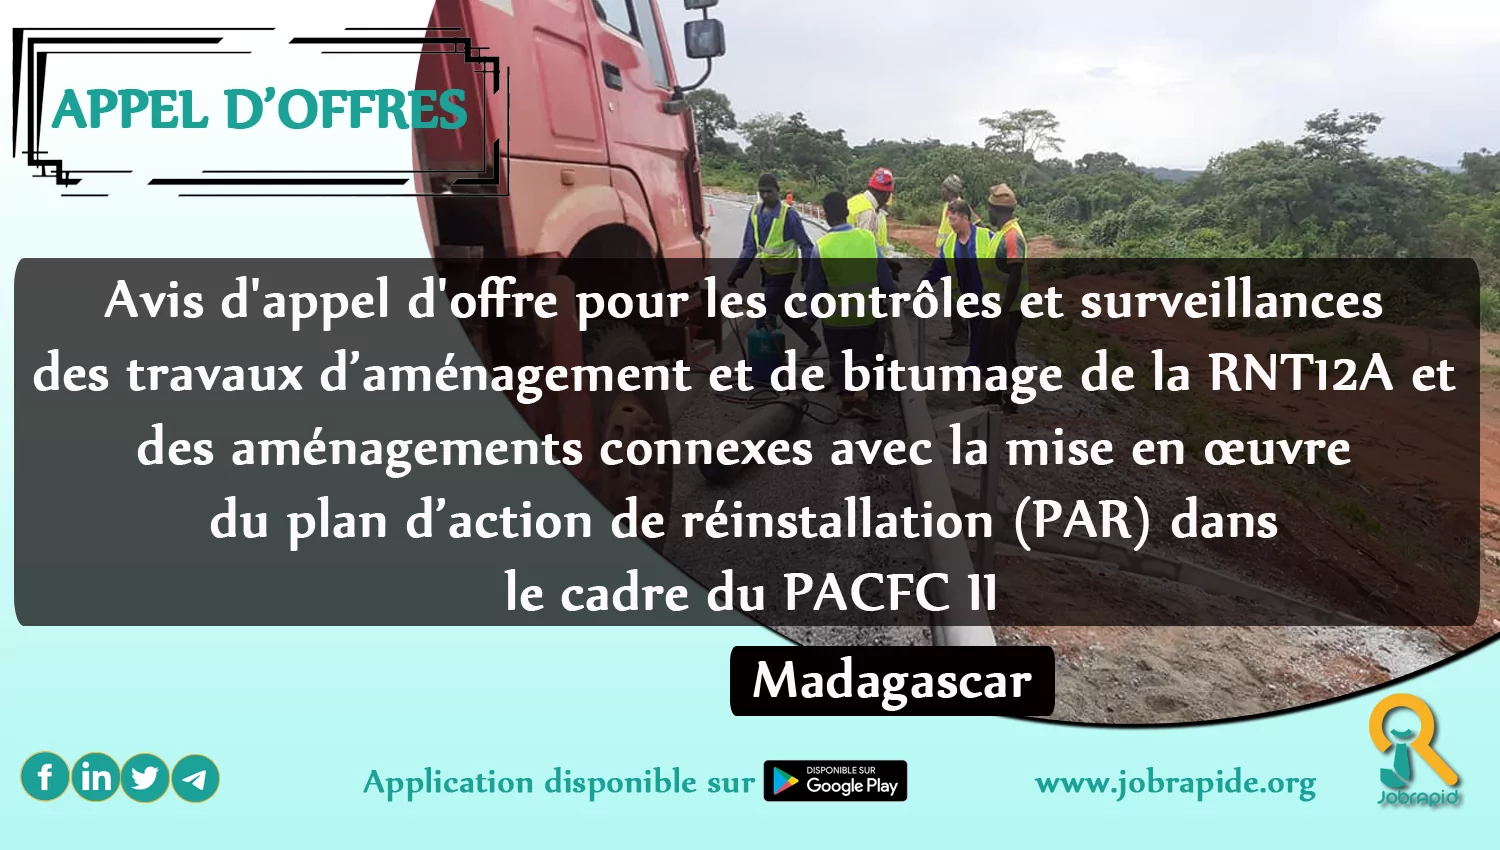 Avis d’appel d’offre pour les contrôles et surveillances des travaux d’aménagement et de bitumage de la RNT12A et des aménagements connexes avec la mise en œuvre du plan d’action de réinstallation (PAR) dans le cadre du PACFC II, Madagascar